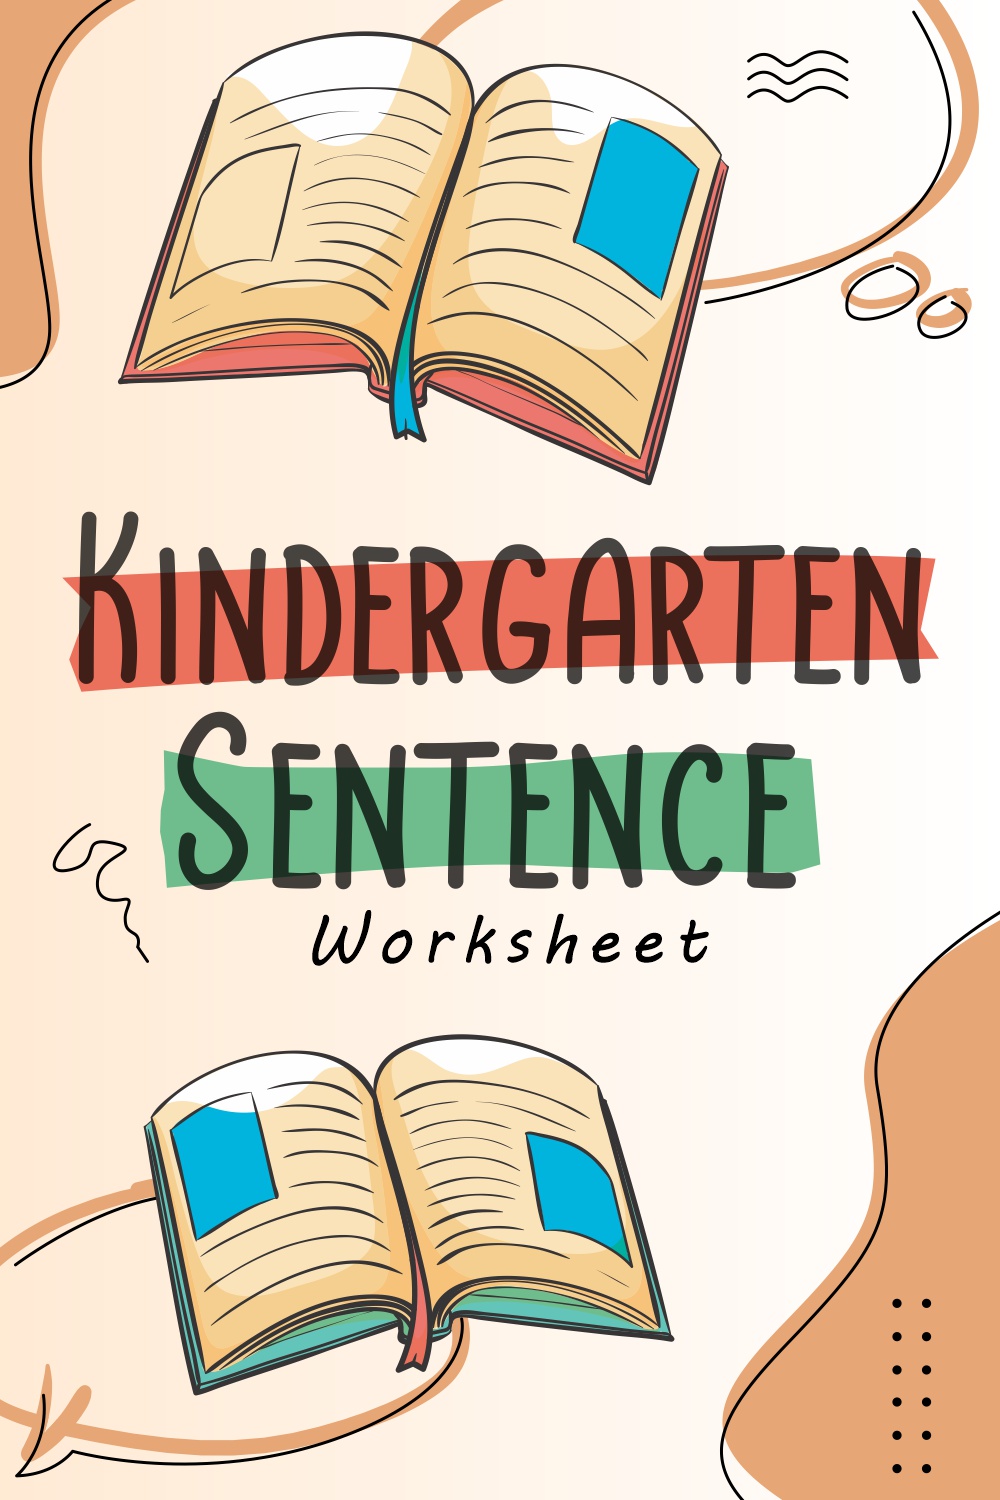 9 Images of Kindergarten Sentence Worksheets